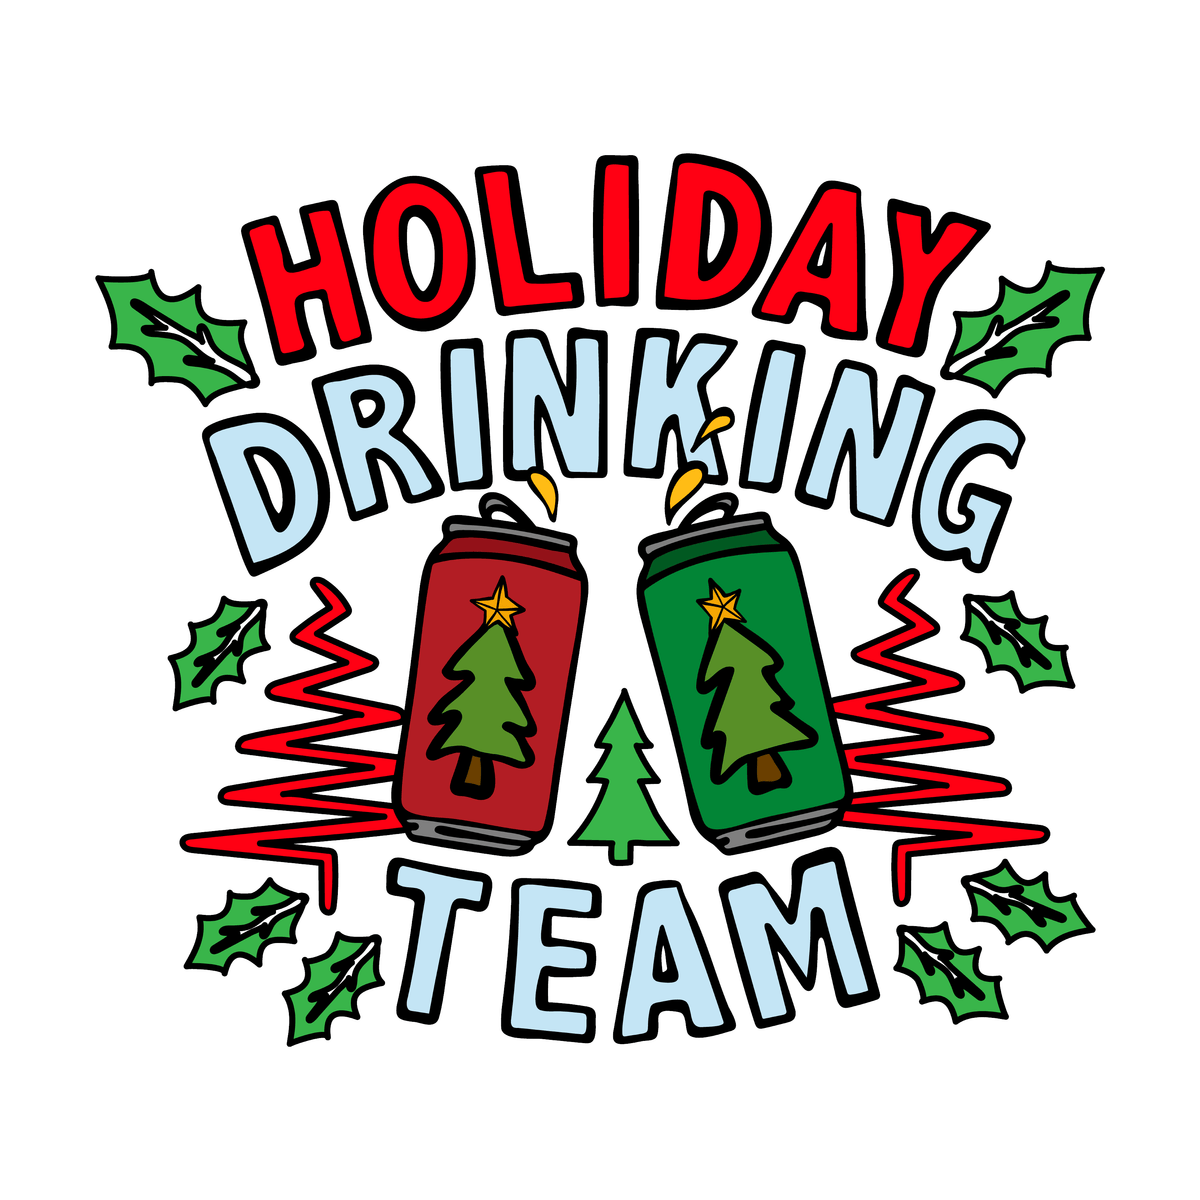 Holiday Drinking Team 🍻🎄 – Men's T Shirt